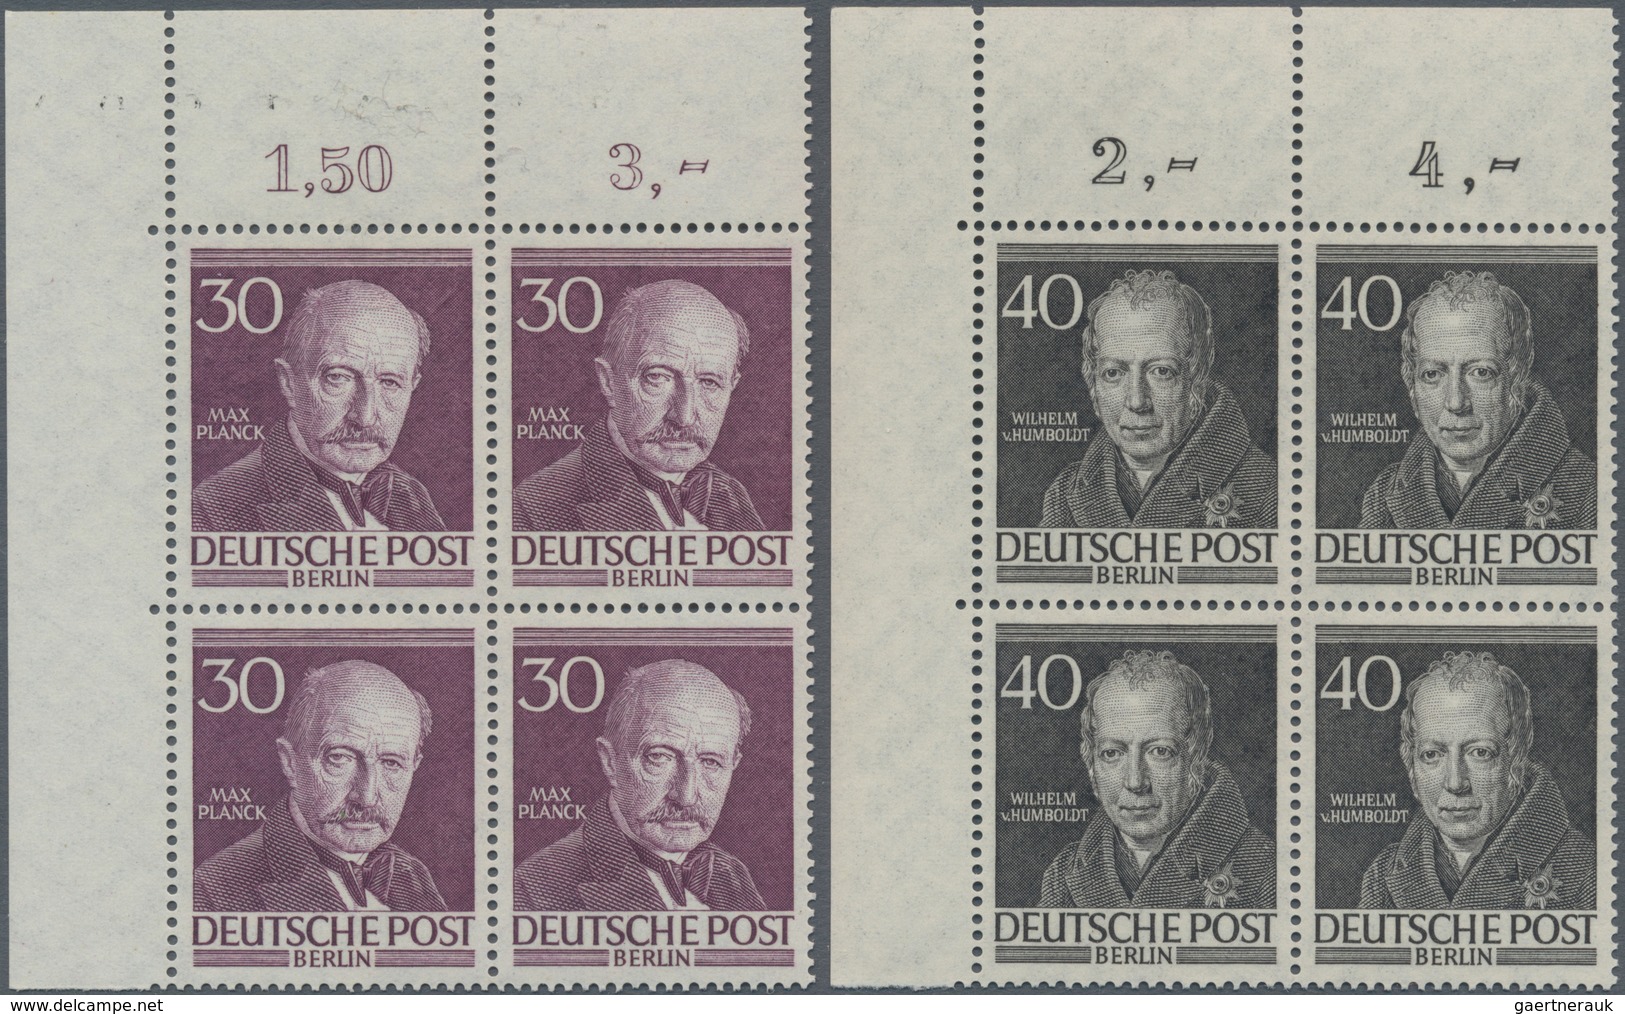 Berlin: 1952-1953, Männer aus der Geschichte Berlins, Satz von 10 Werte in postfrischen Viererblocks